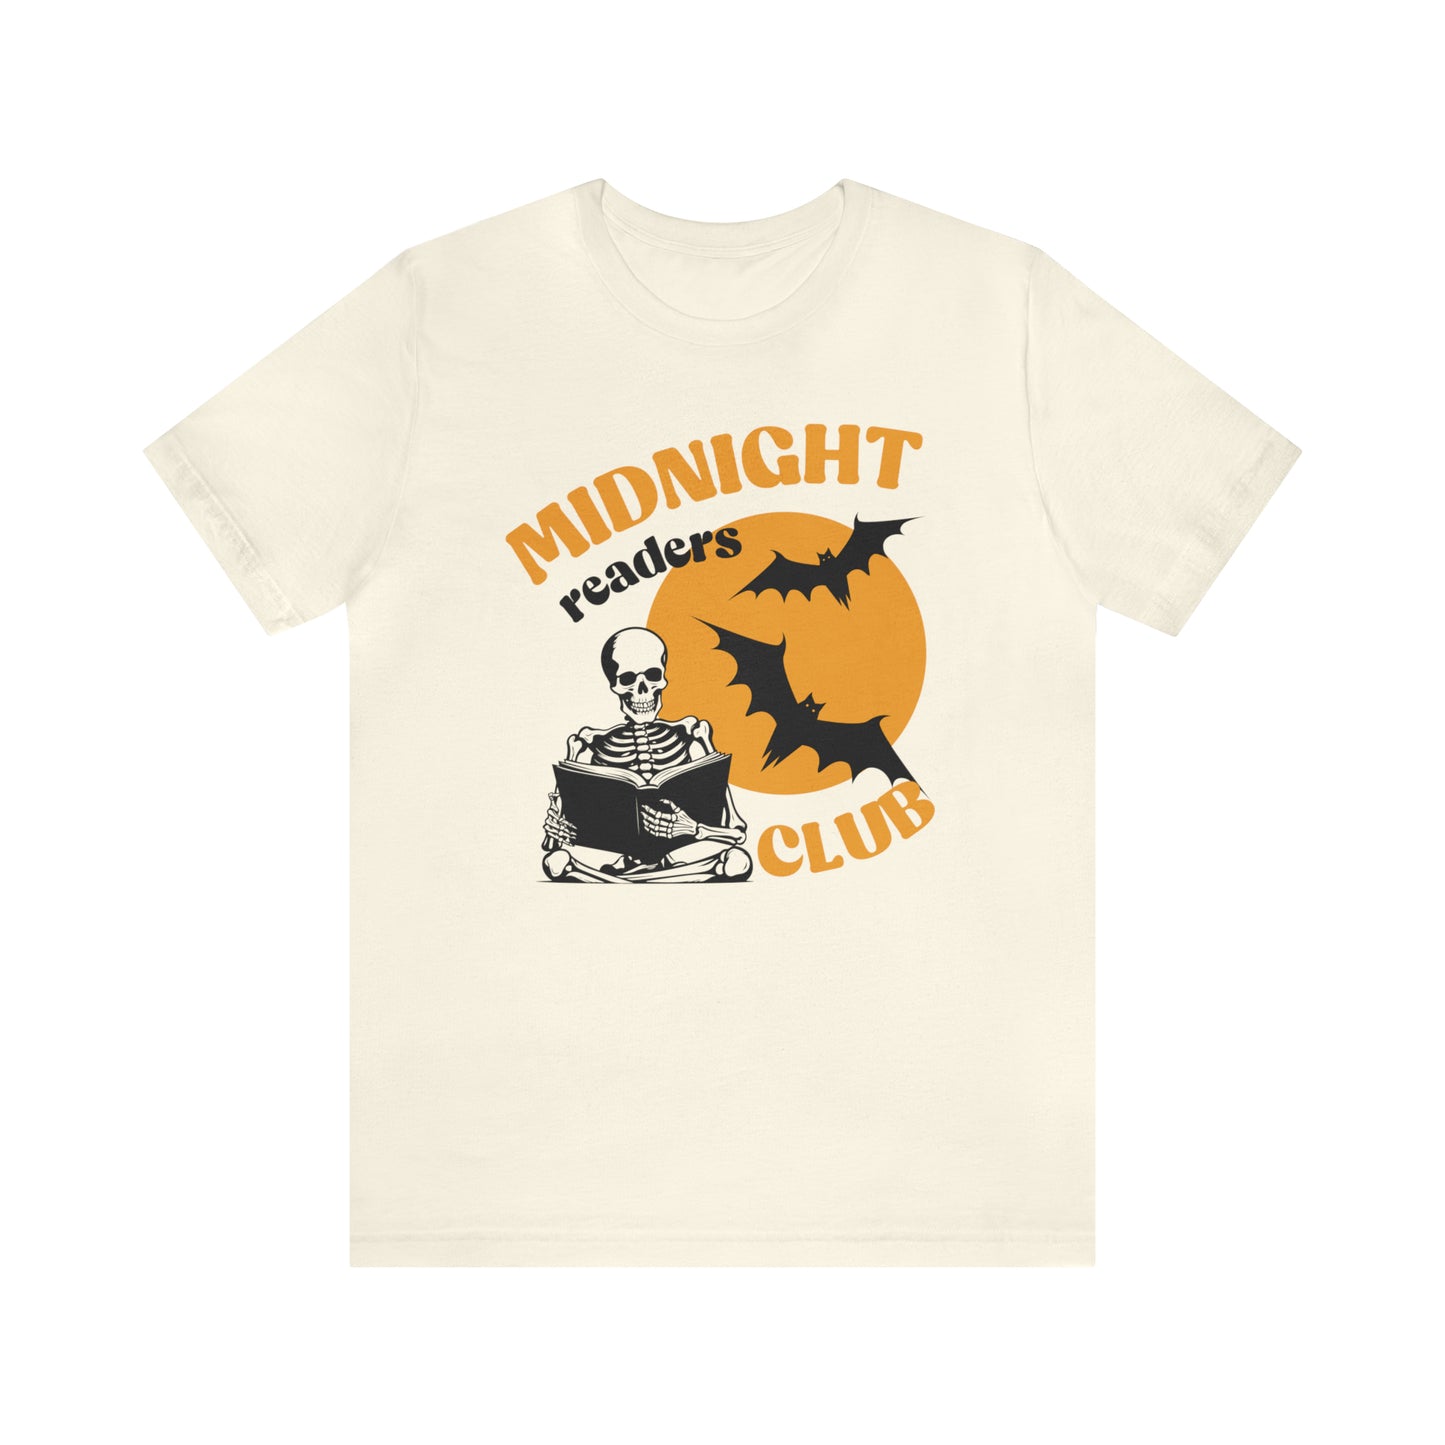 Midnight Readers Club Tee - Halloween Bookish Shirt